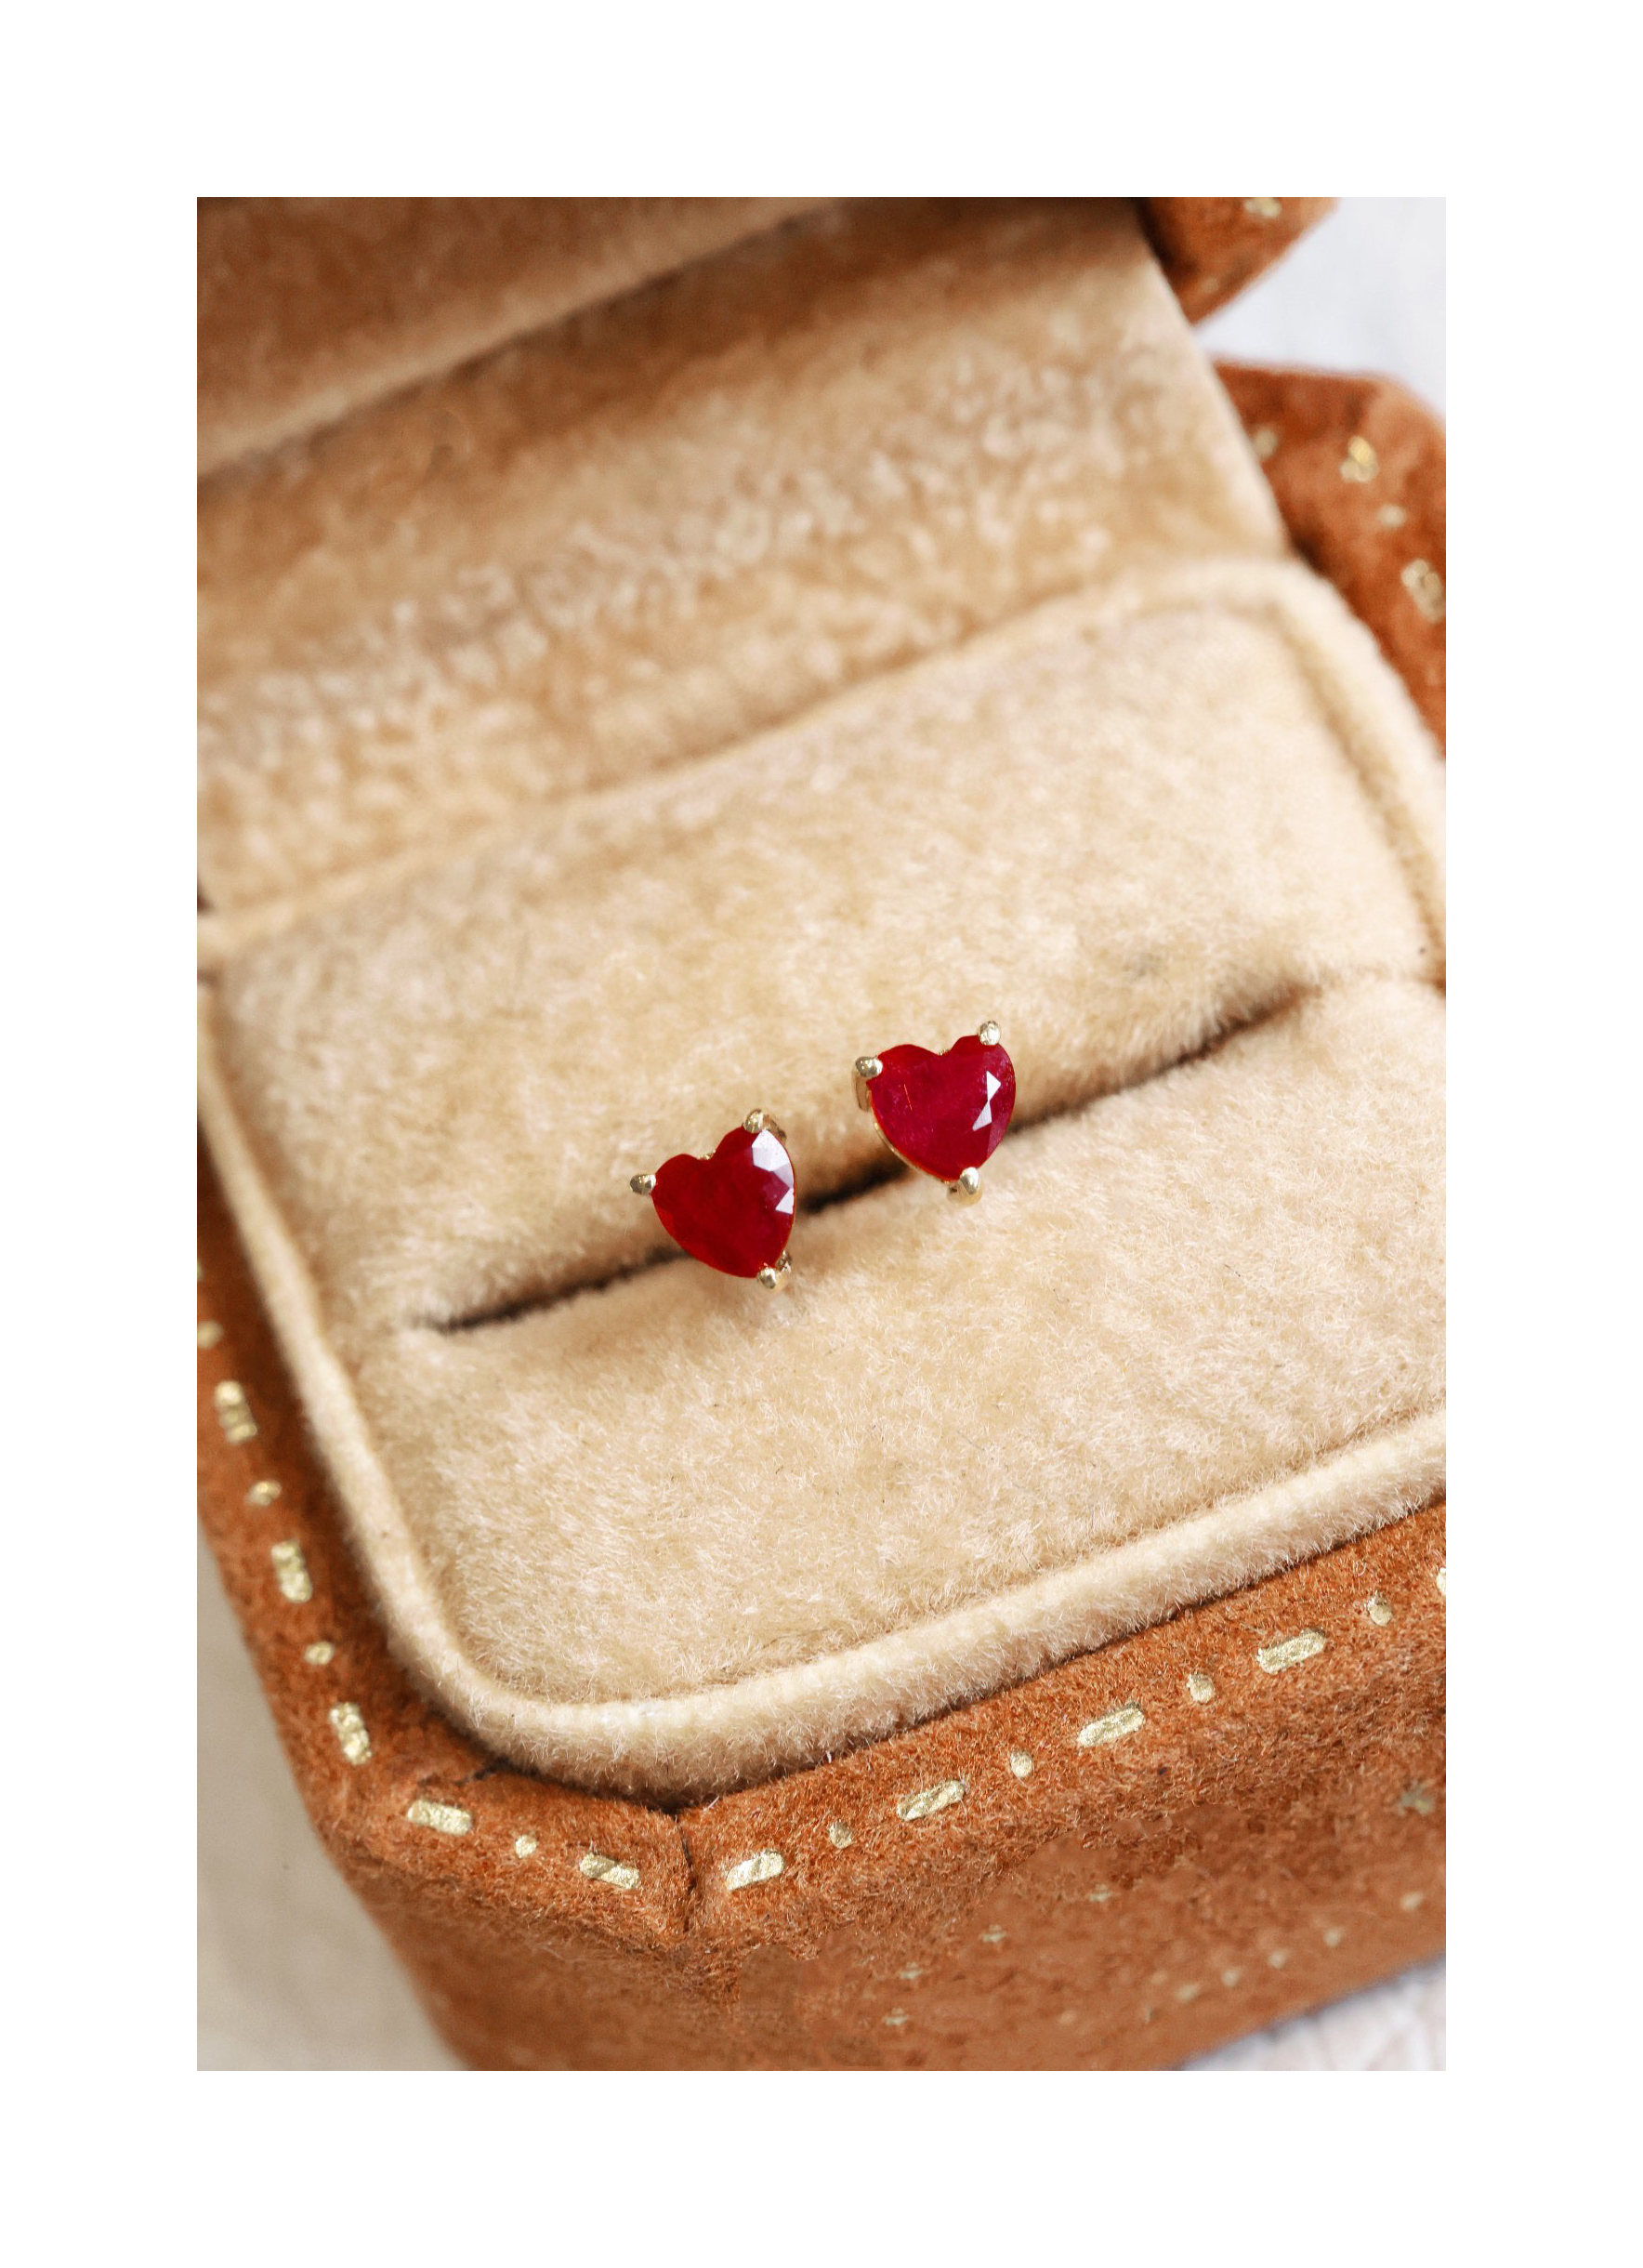 22090410 Diamondbox - ruby Jewelry earrings ear studs au750 18k gold 0 27ct red heart shaped romance gem stones gift idea196y